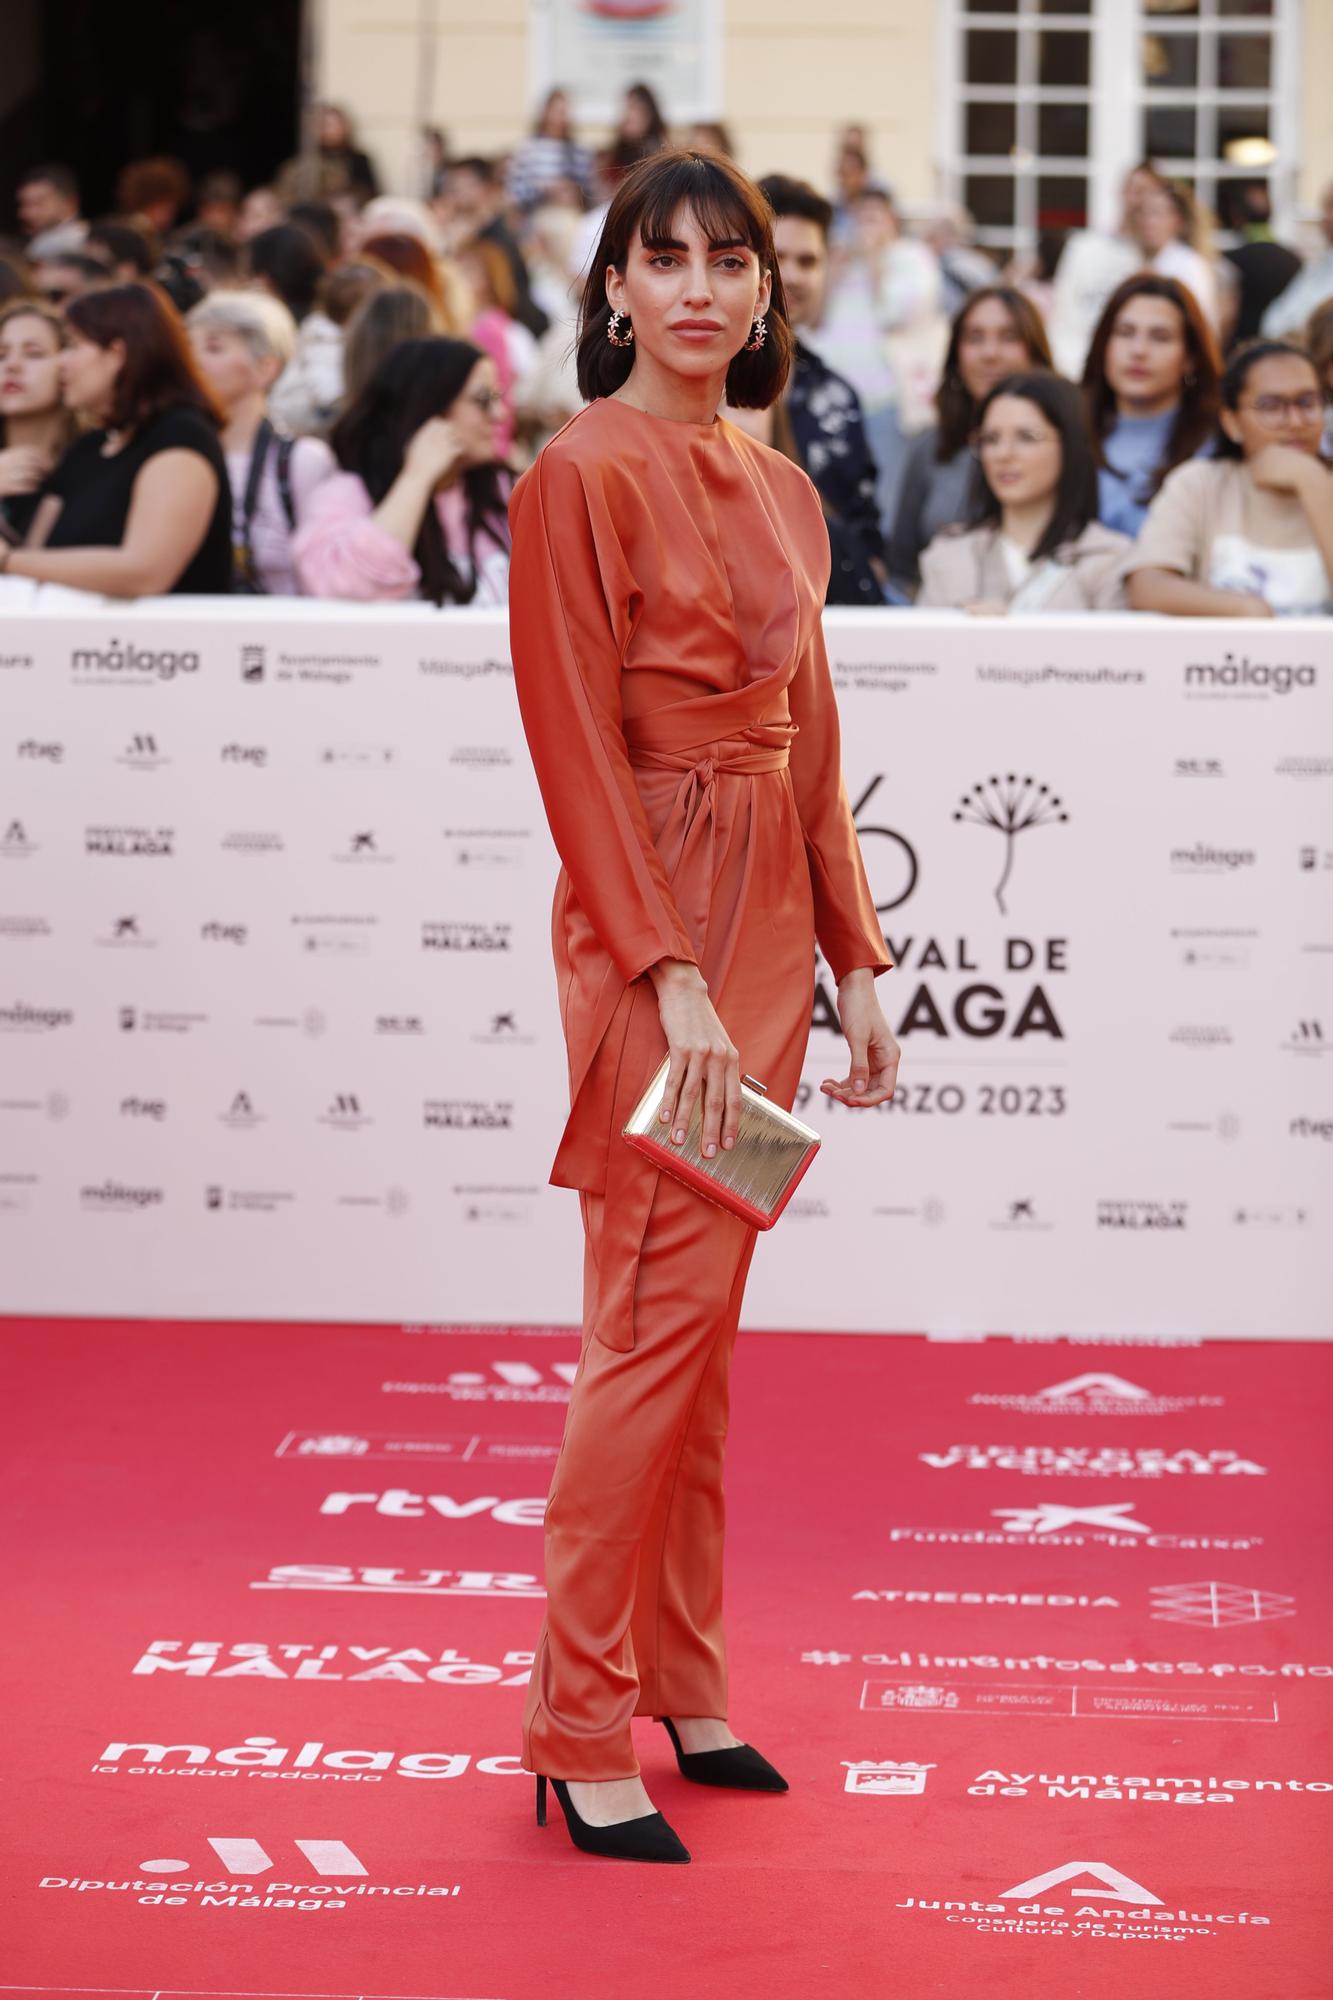 Las imágenes de la alfombra roja de la gala inaugural del 26 Festival de Málaga